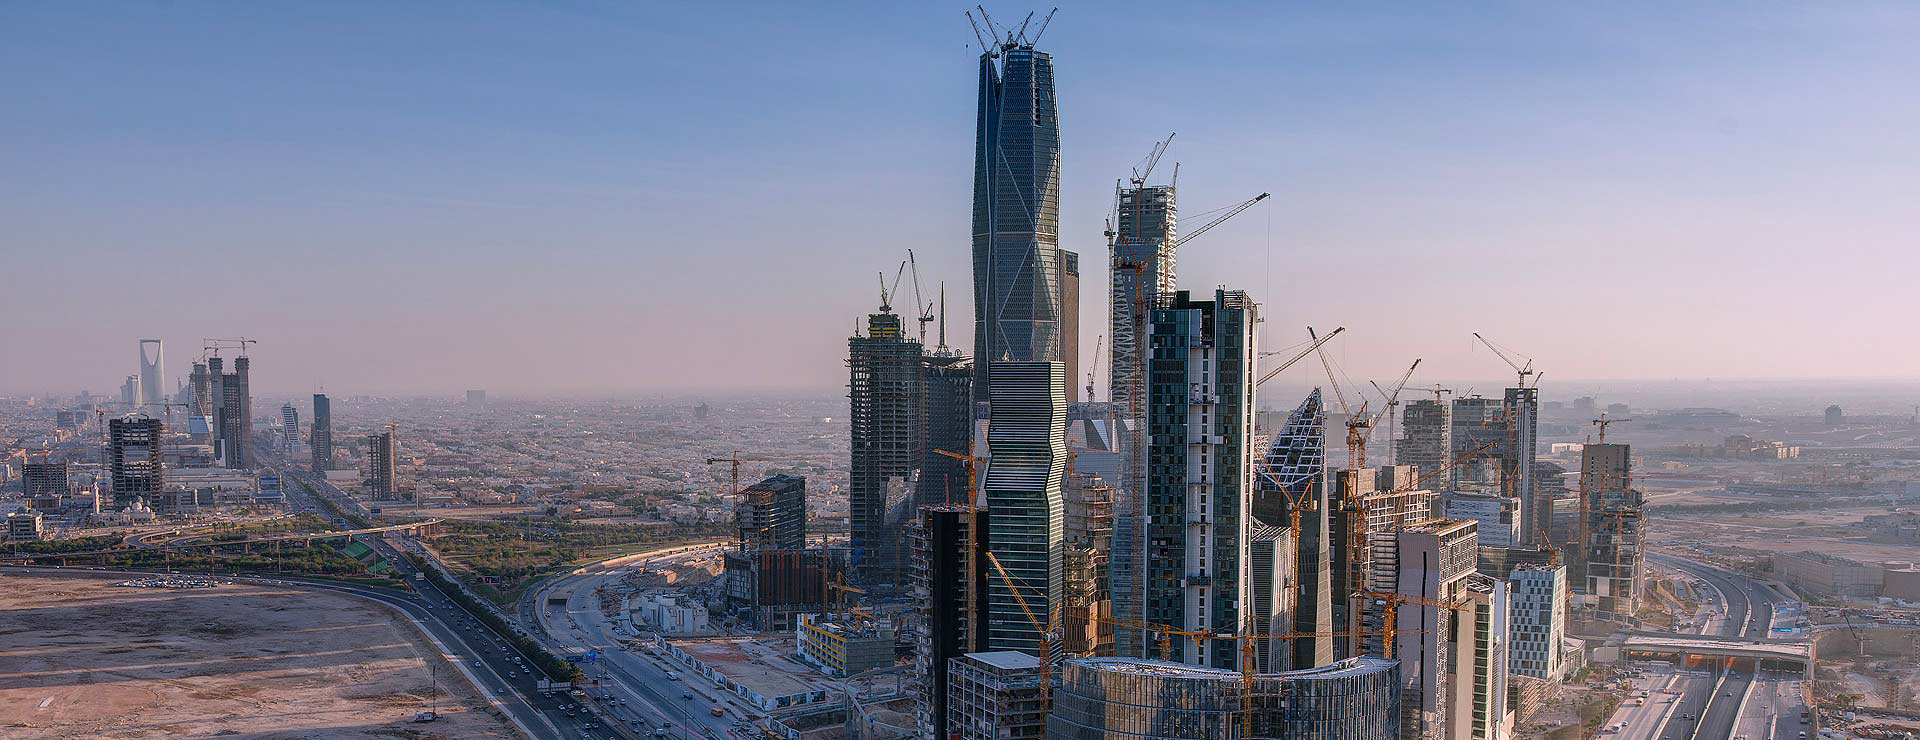 В Саудовской Аравии построят уникальный горизонтальный мегаполис